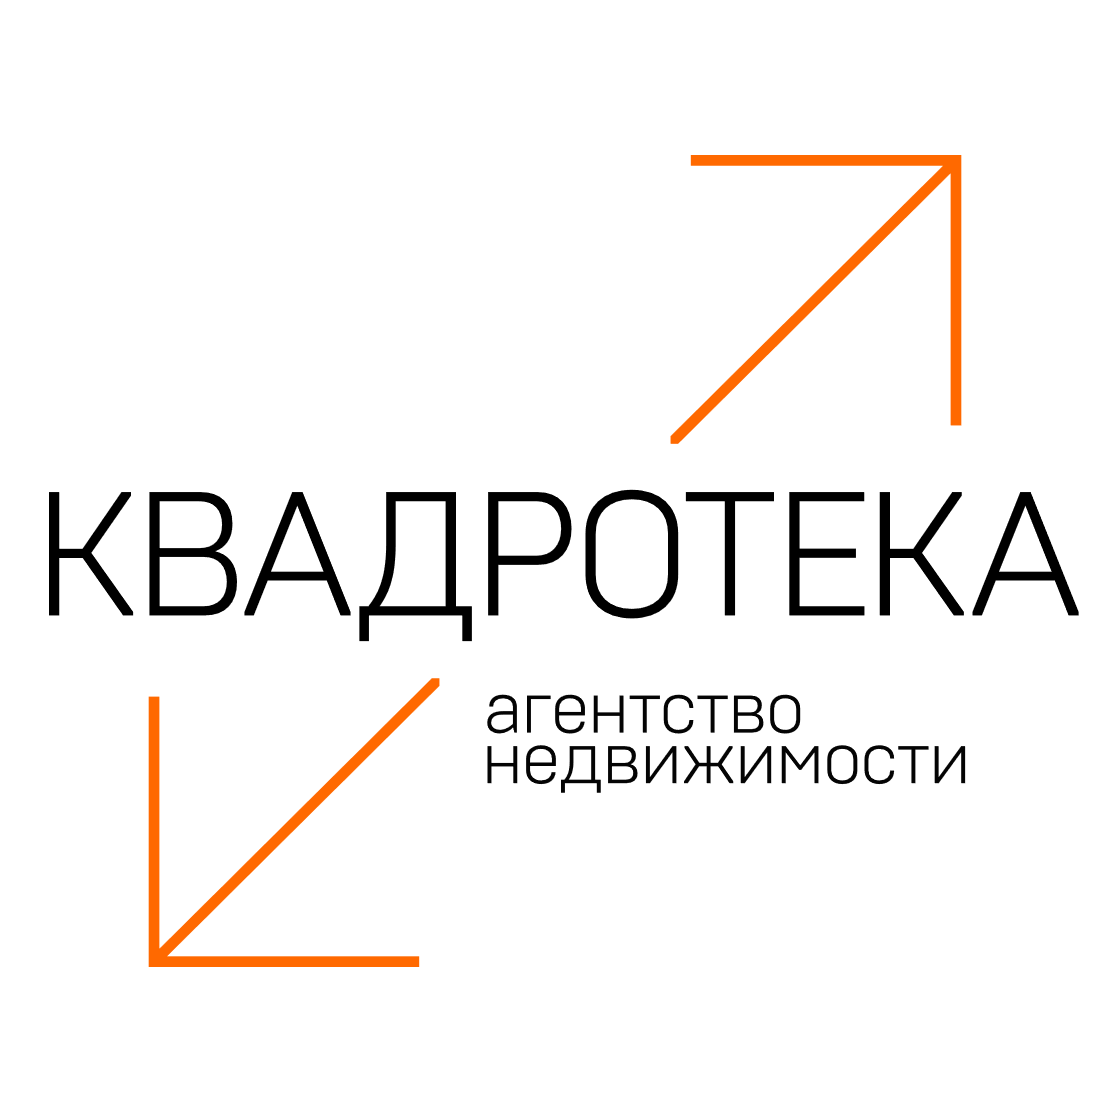 Фото / логотип АН Квадротека на проспекте Строителей 17, Новосибирск